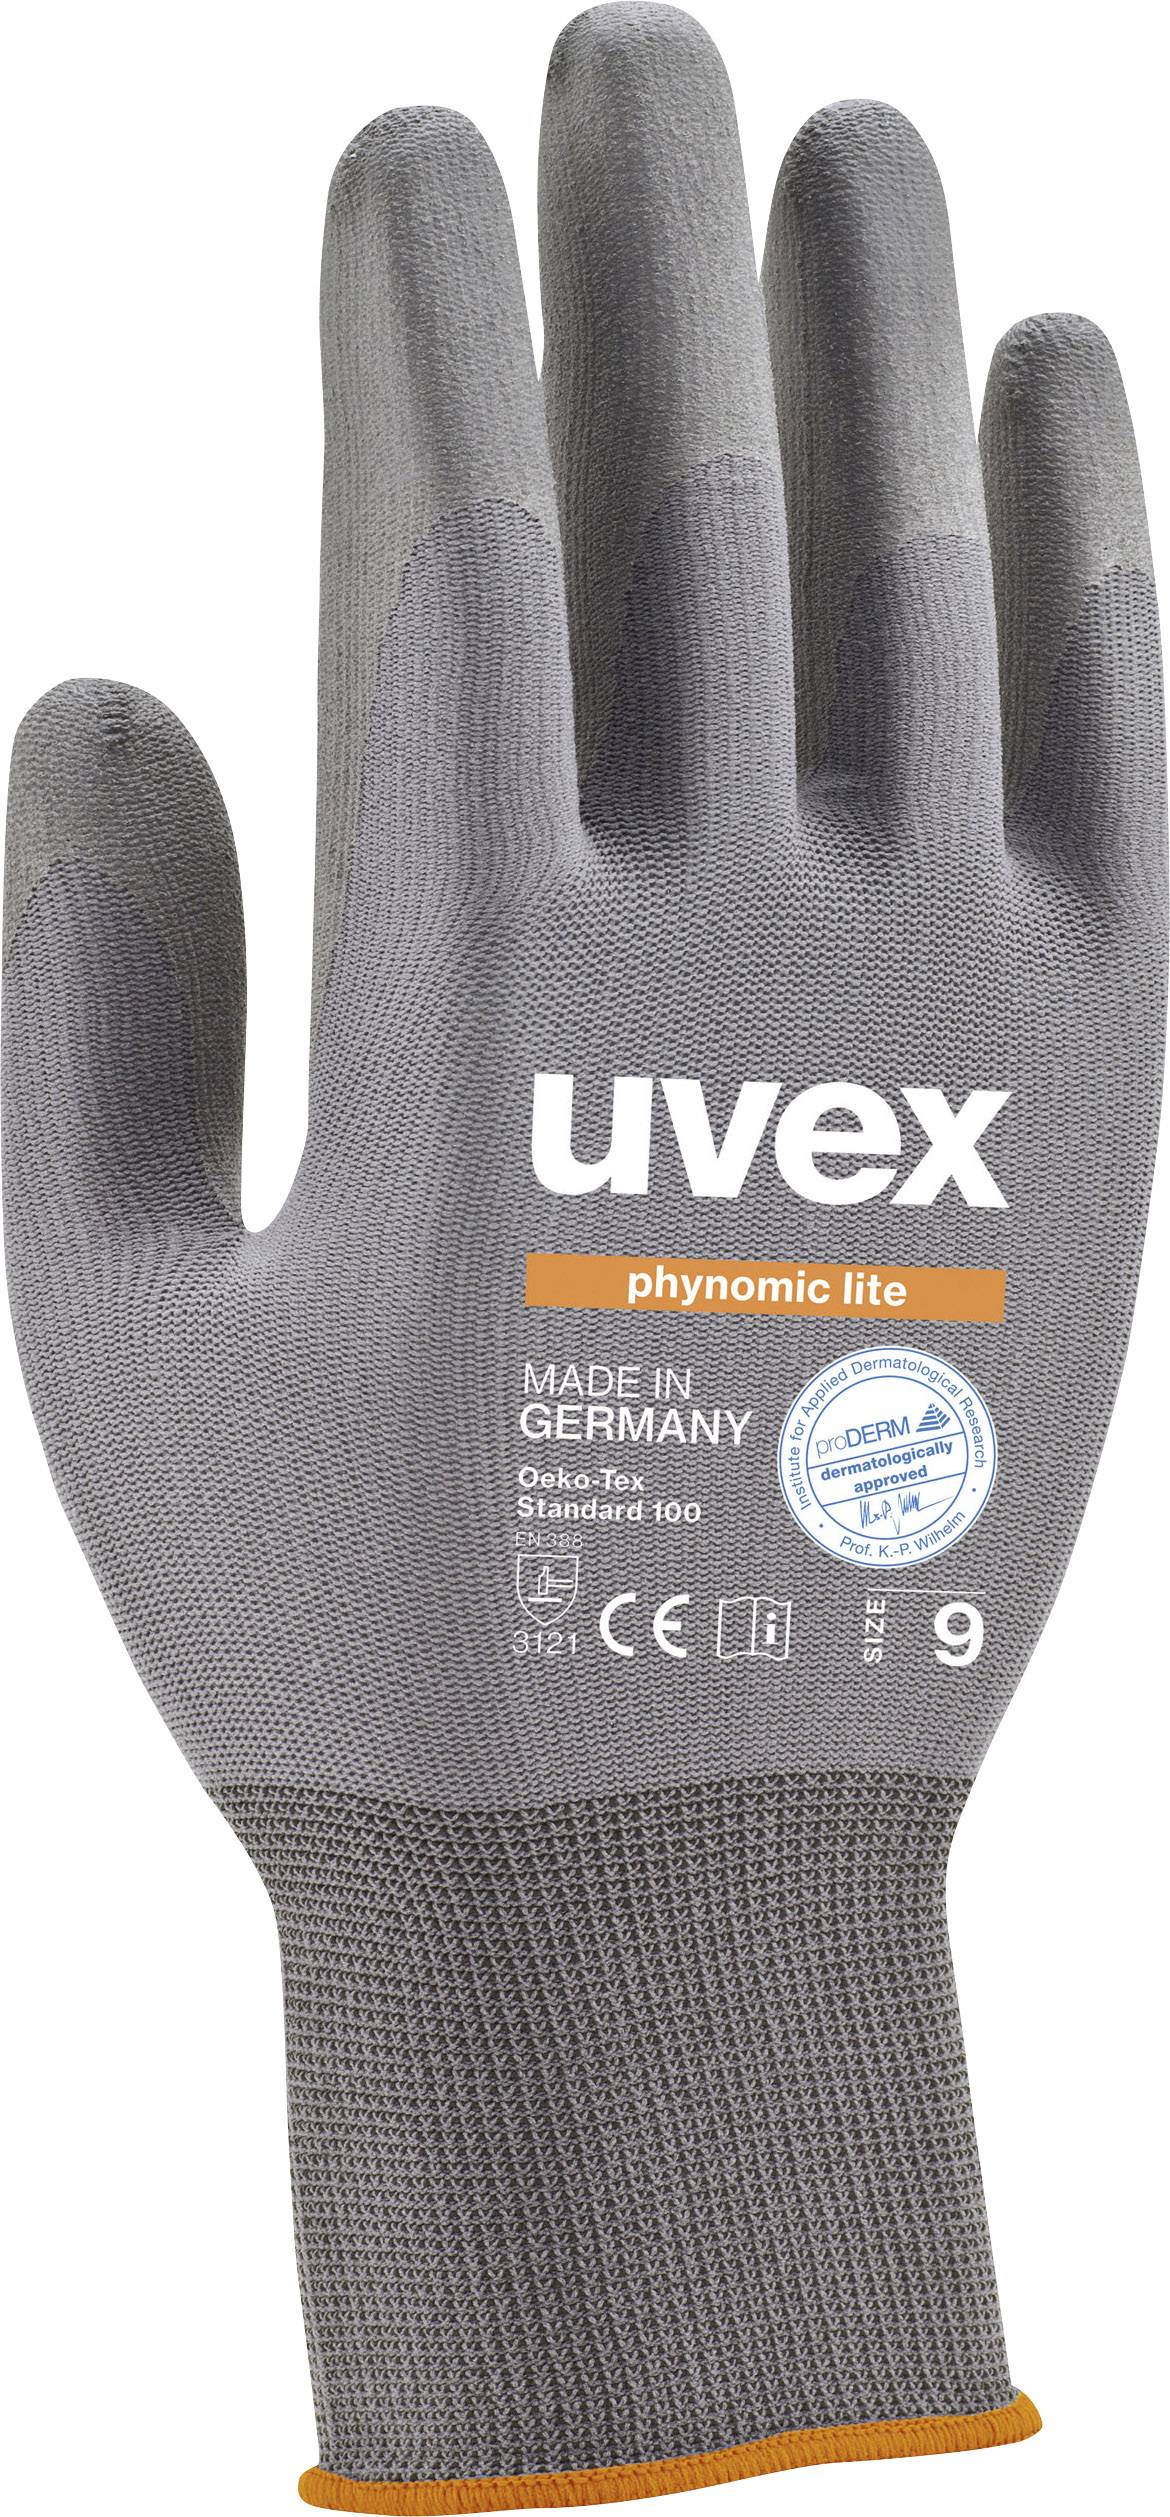 UVEX 6004010 Schutzhandschuh phynomic lite Größe (Handschuhe): 10 (6004010)